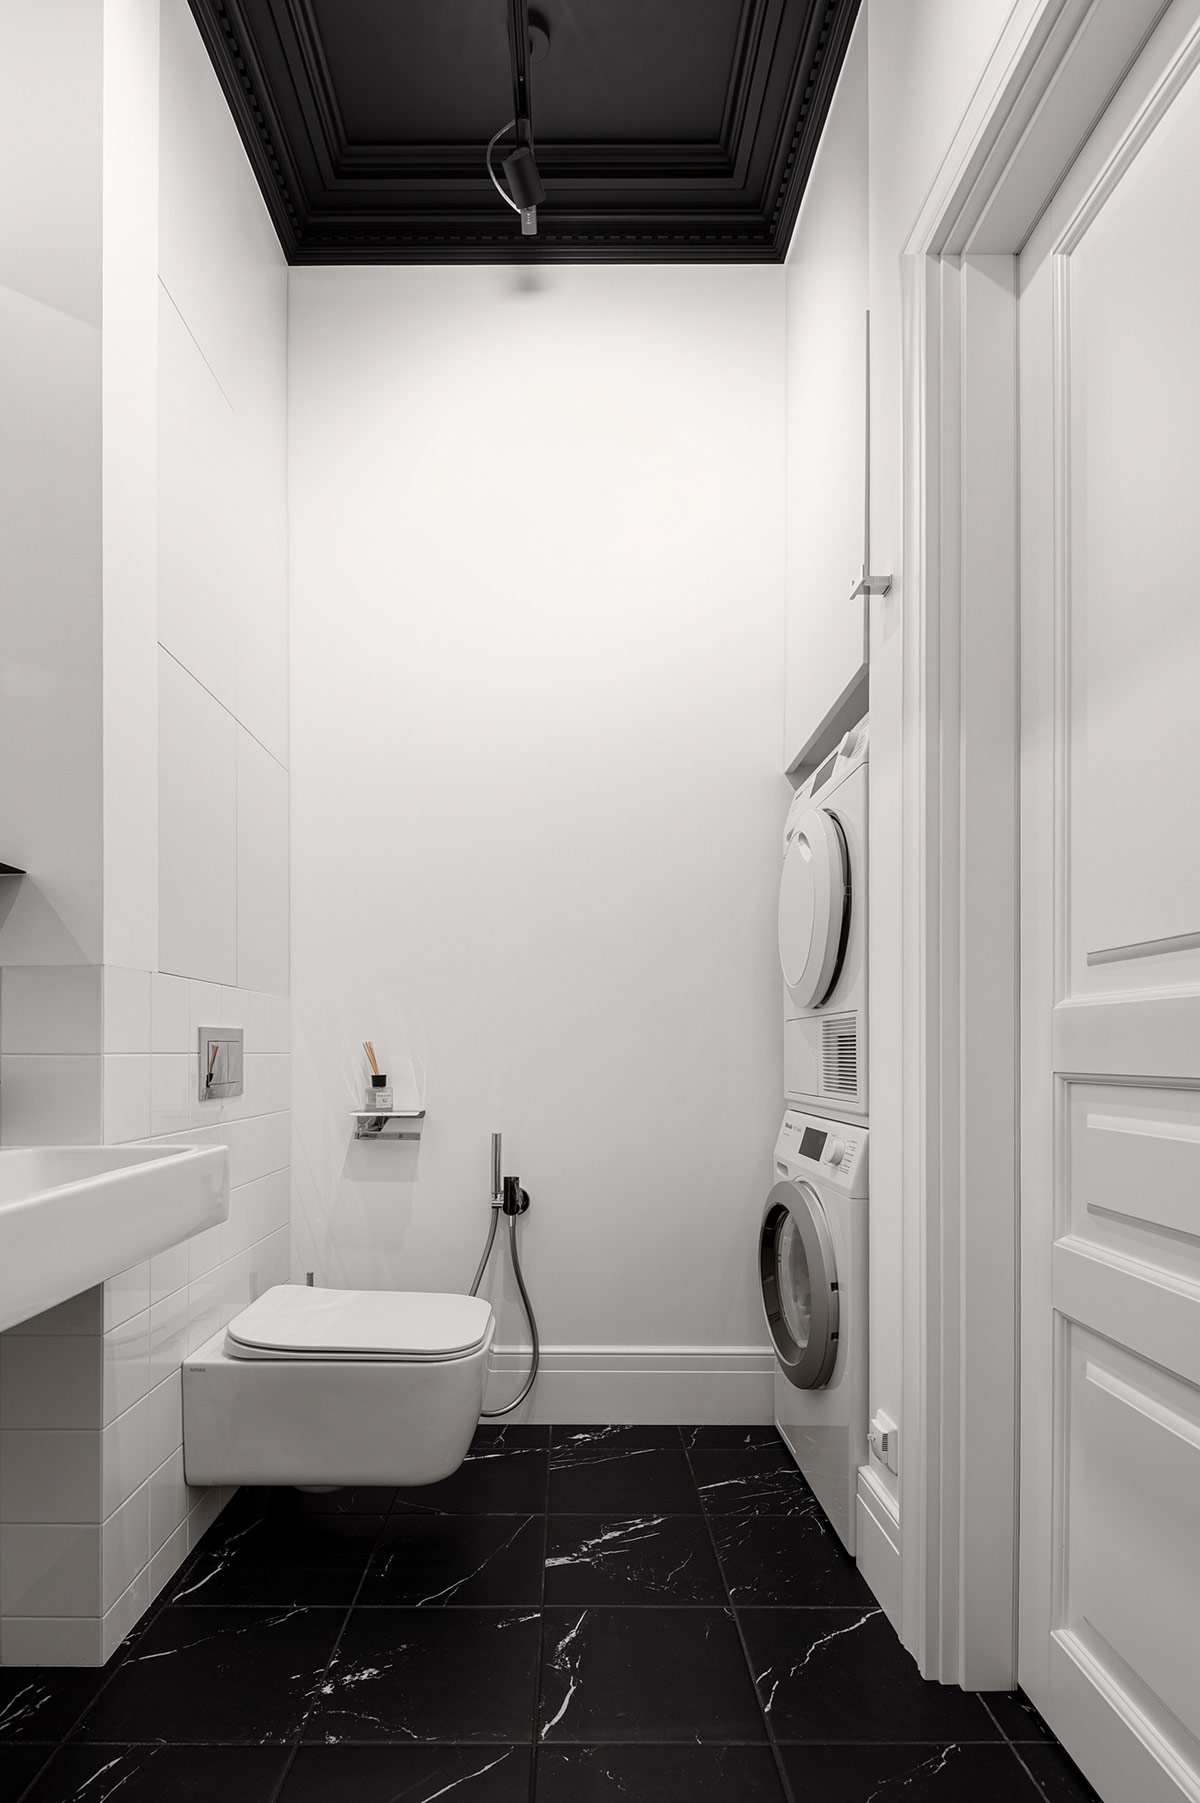 Trần phòng tắm sơn đen cùng tông với gạch lát sàn giúp gia tăng chiều sâu cho không gian, đồng thời mang lại cảm giác sang trọng.